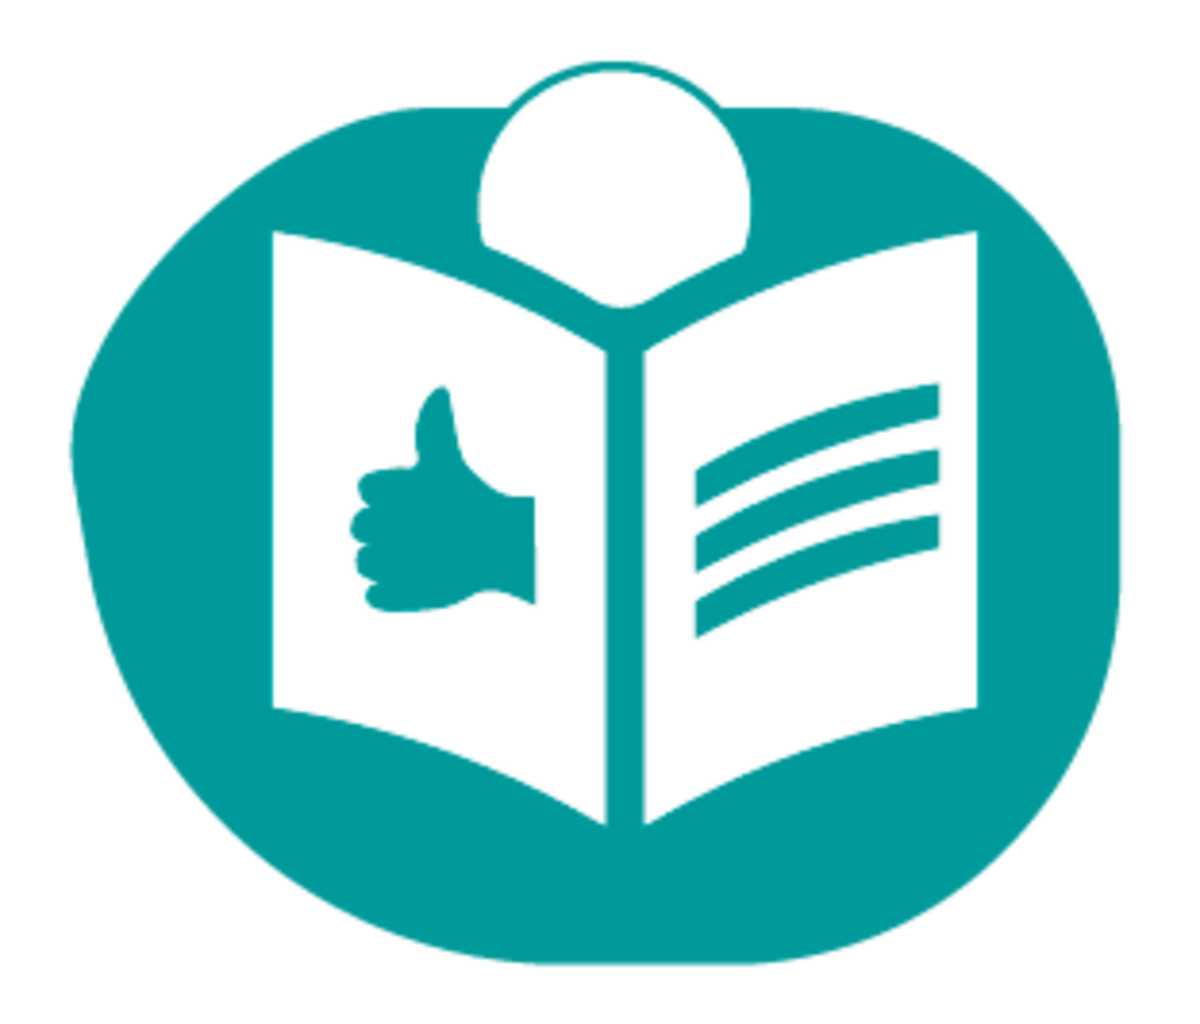 Das Icon für Leichte Sprache: Ein Mensch hinter einem offenem Buch, auf dem ein "Daumen hoch"-Symbol steht. 